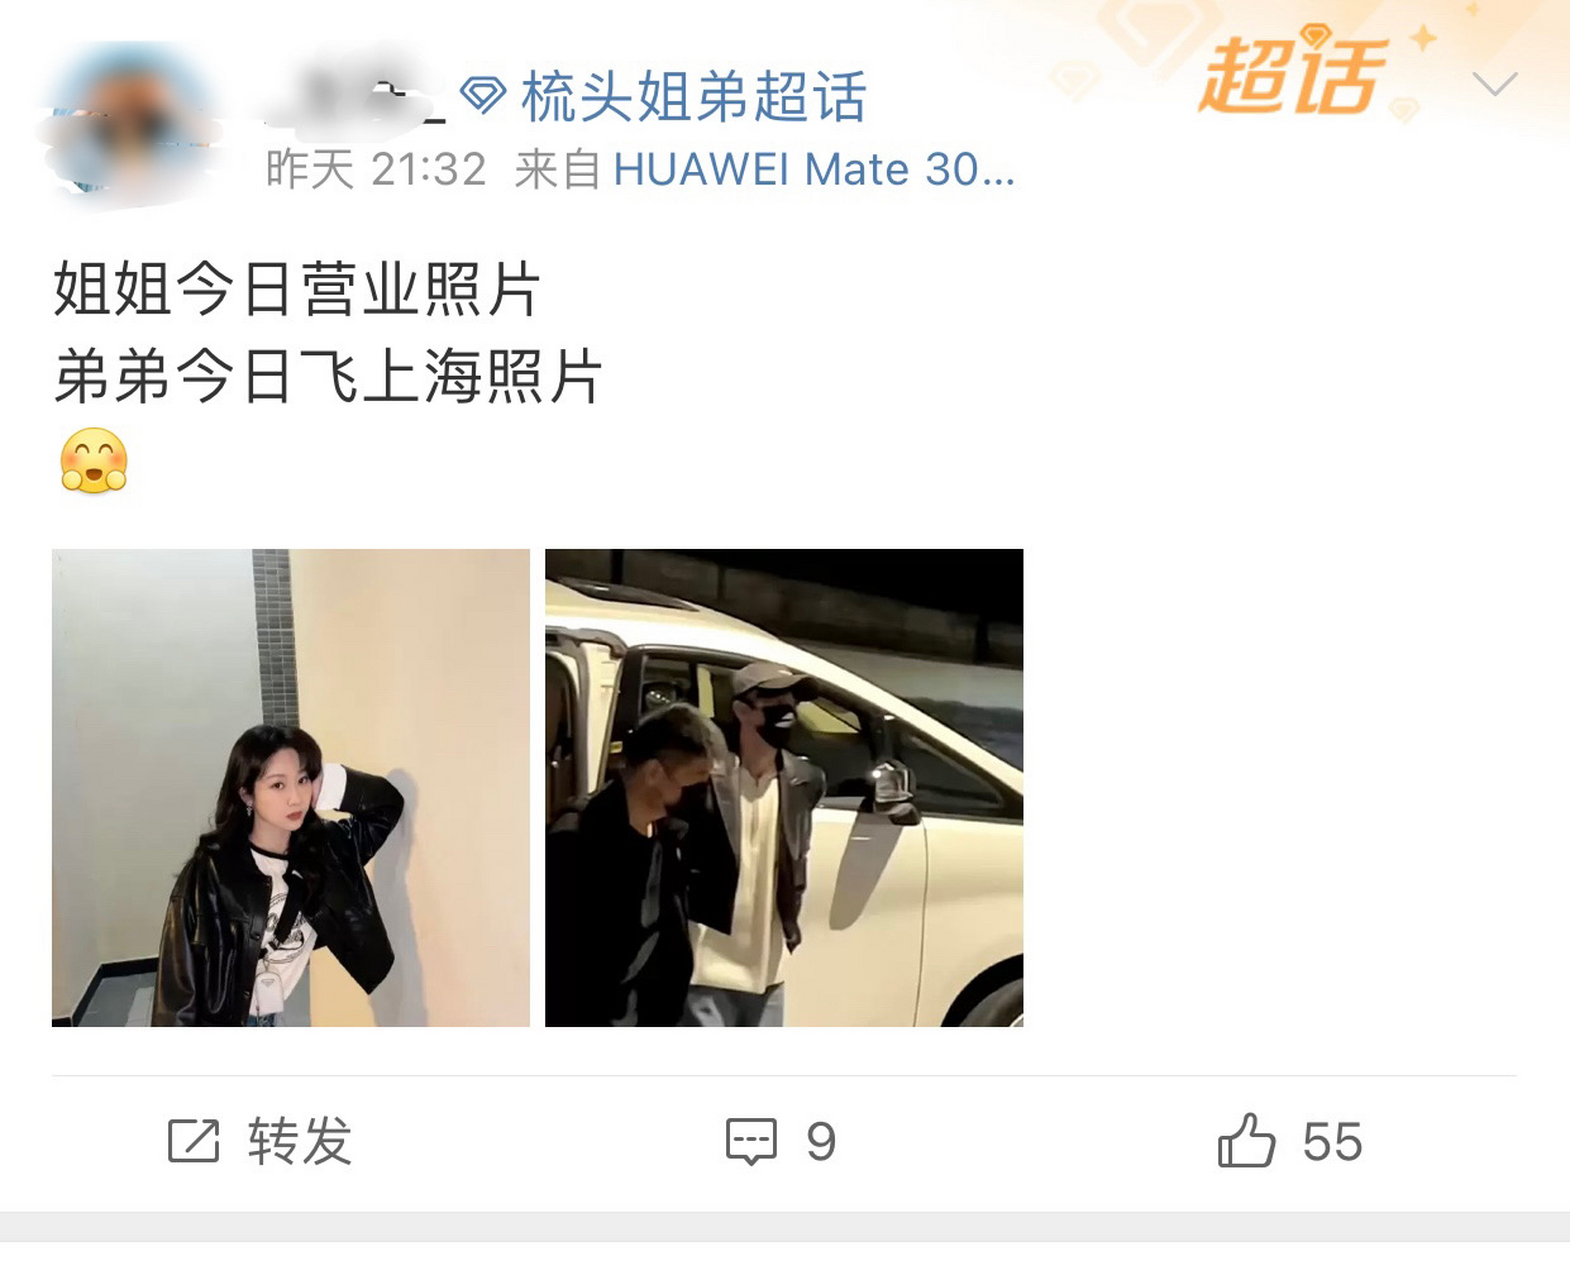 有粉丝发现,杨紫和王俊凯穿了同款穿搭,梳头姐弟cp又磕到了